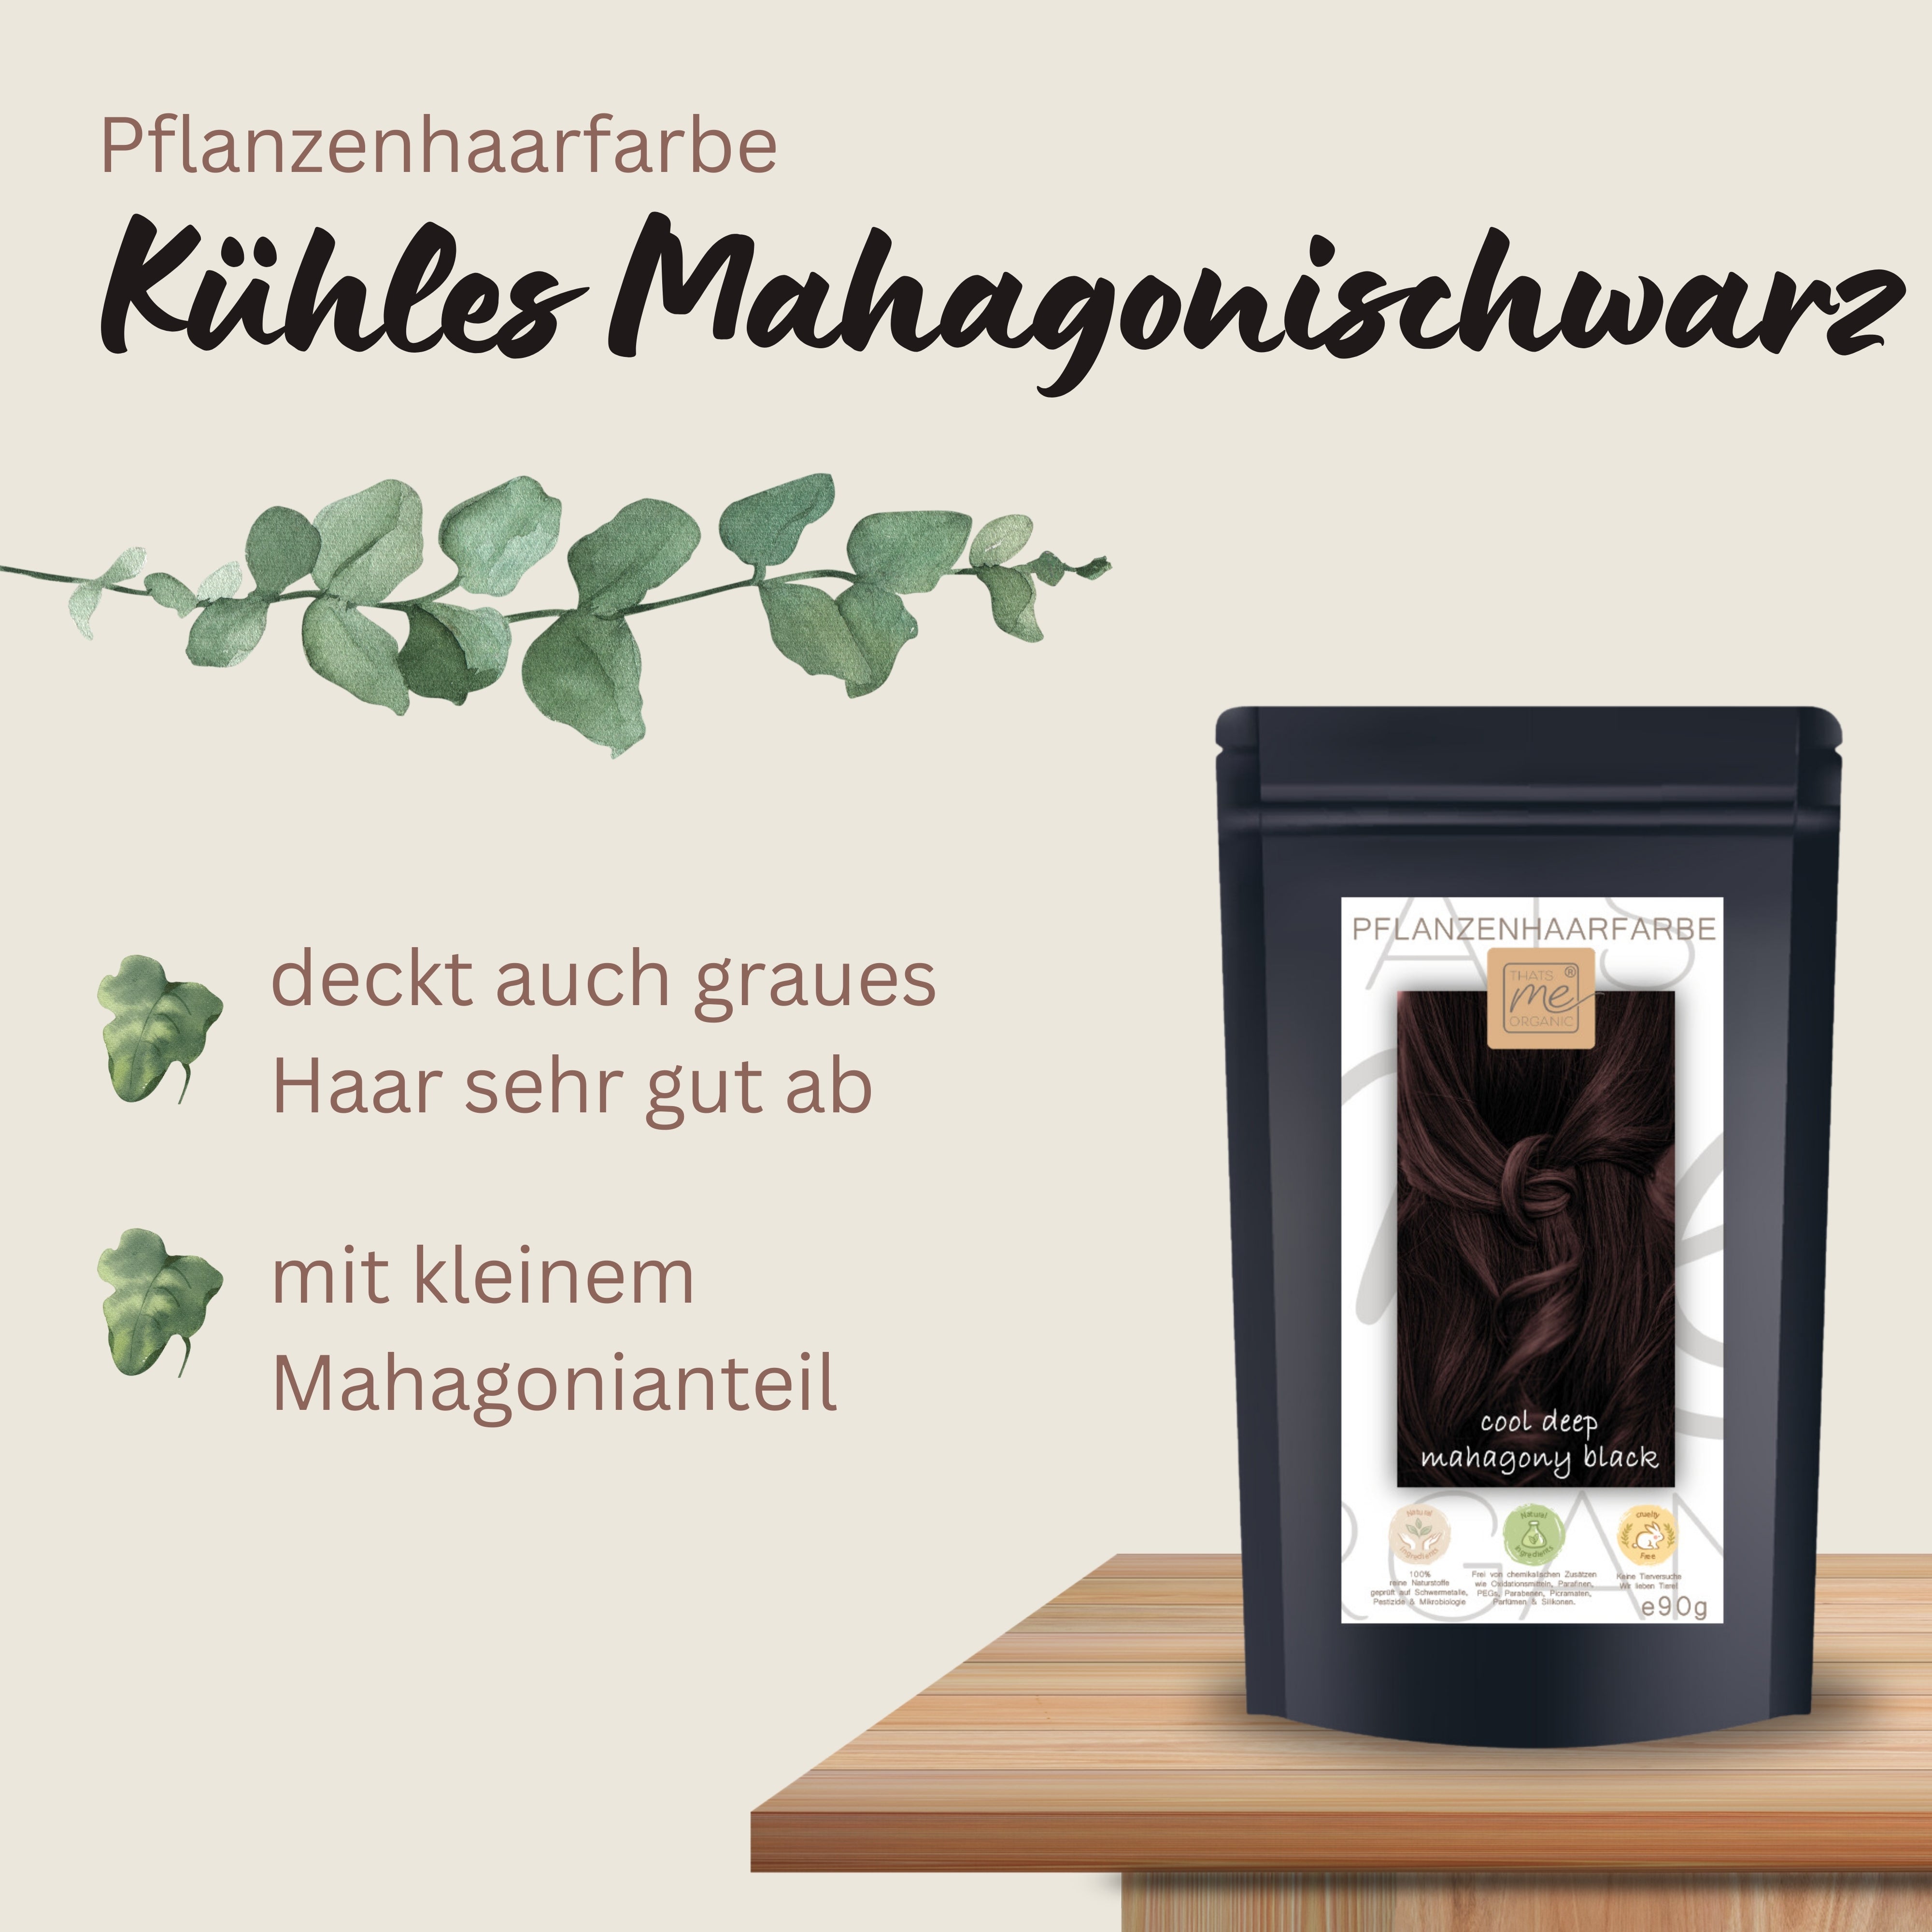 Profi-Pflanzenhaarfarbe kühles dunkles Mahagony-Schwarz "cool deep mahagony black" 90g Nachfüllpack